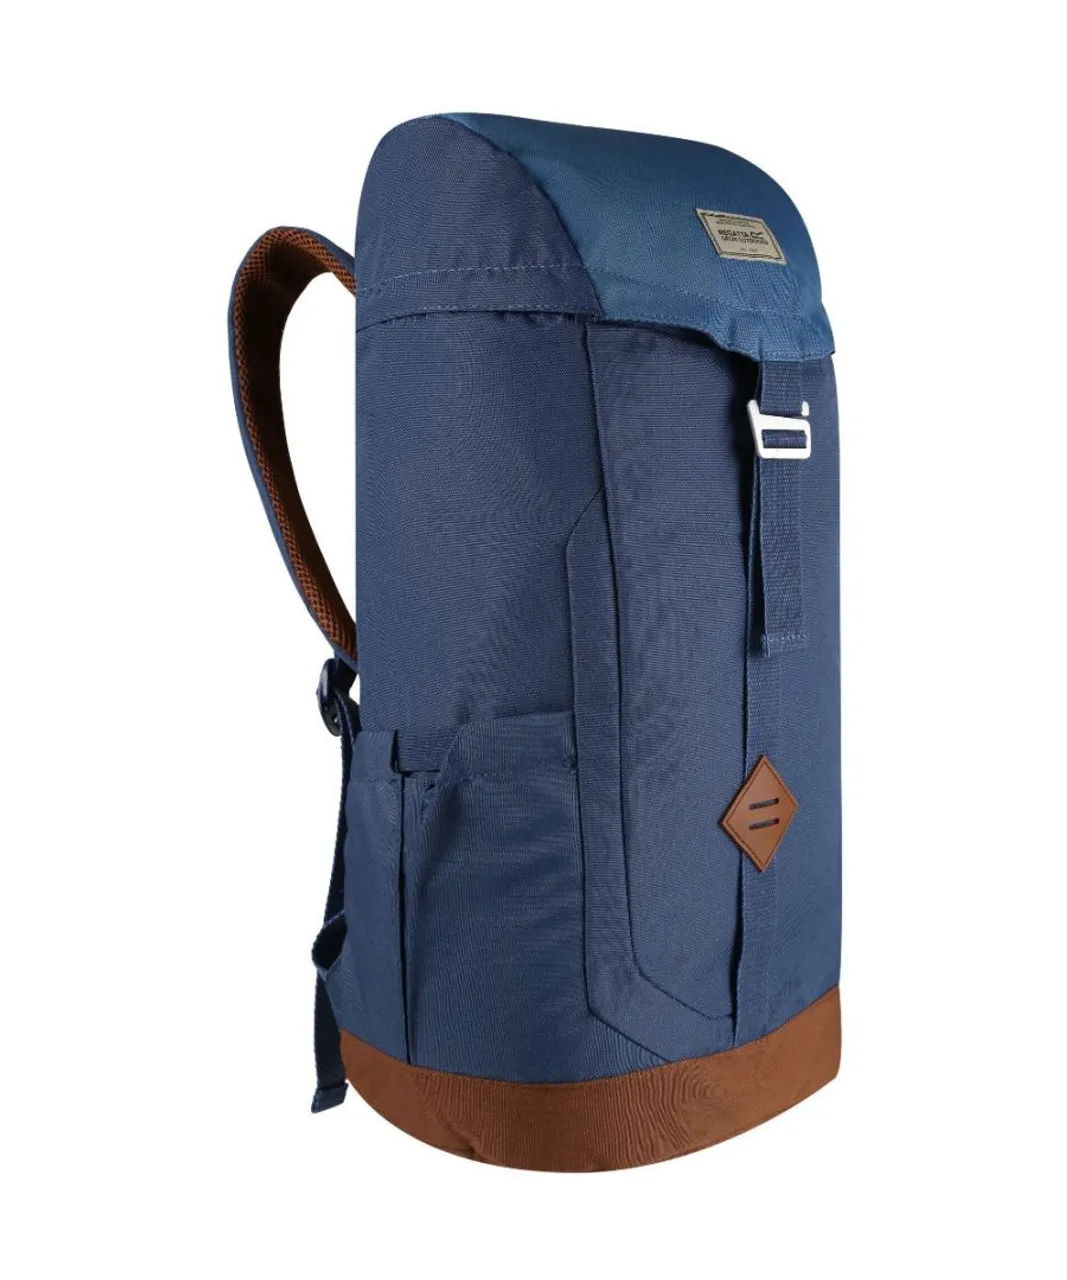 Regatta Boys Stamford 25L Backpack - Navy - One Size